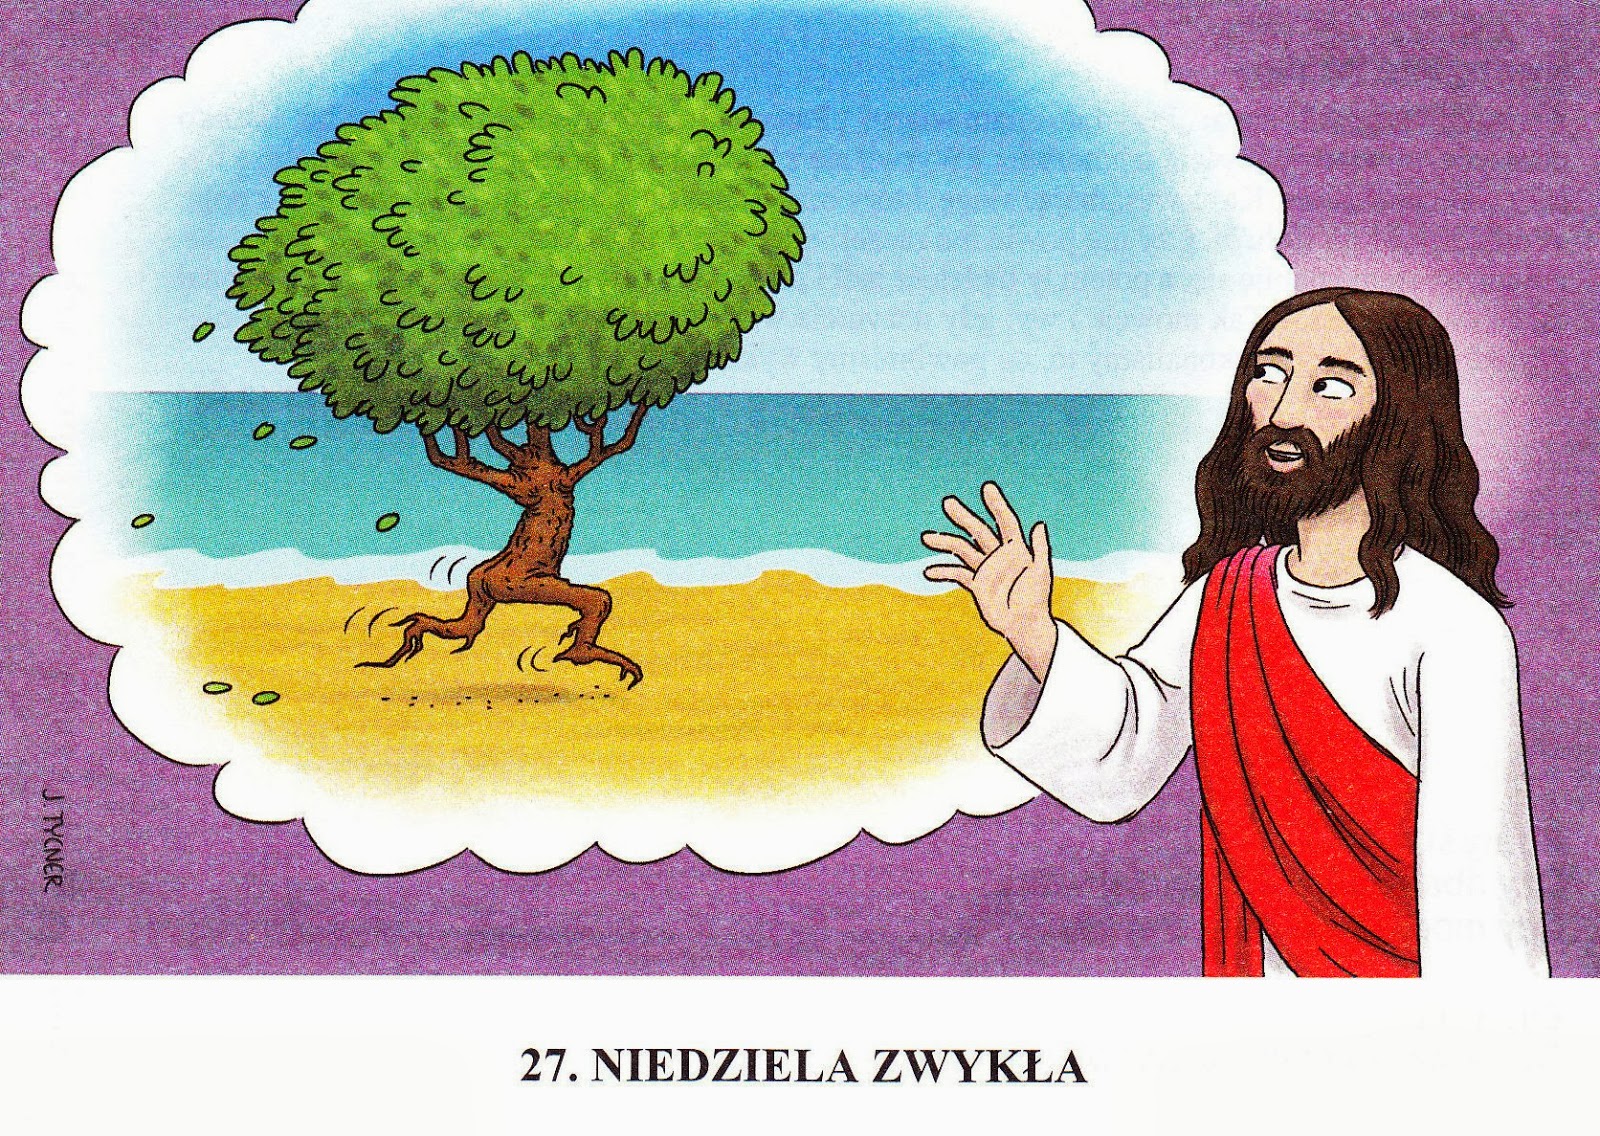 http://bibliapoznan.blogspot.com/2013/10/lectio-divina-na-xxvii-niedziele-zwyka.html